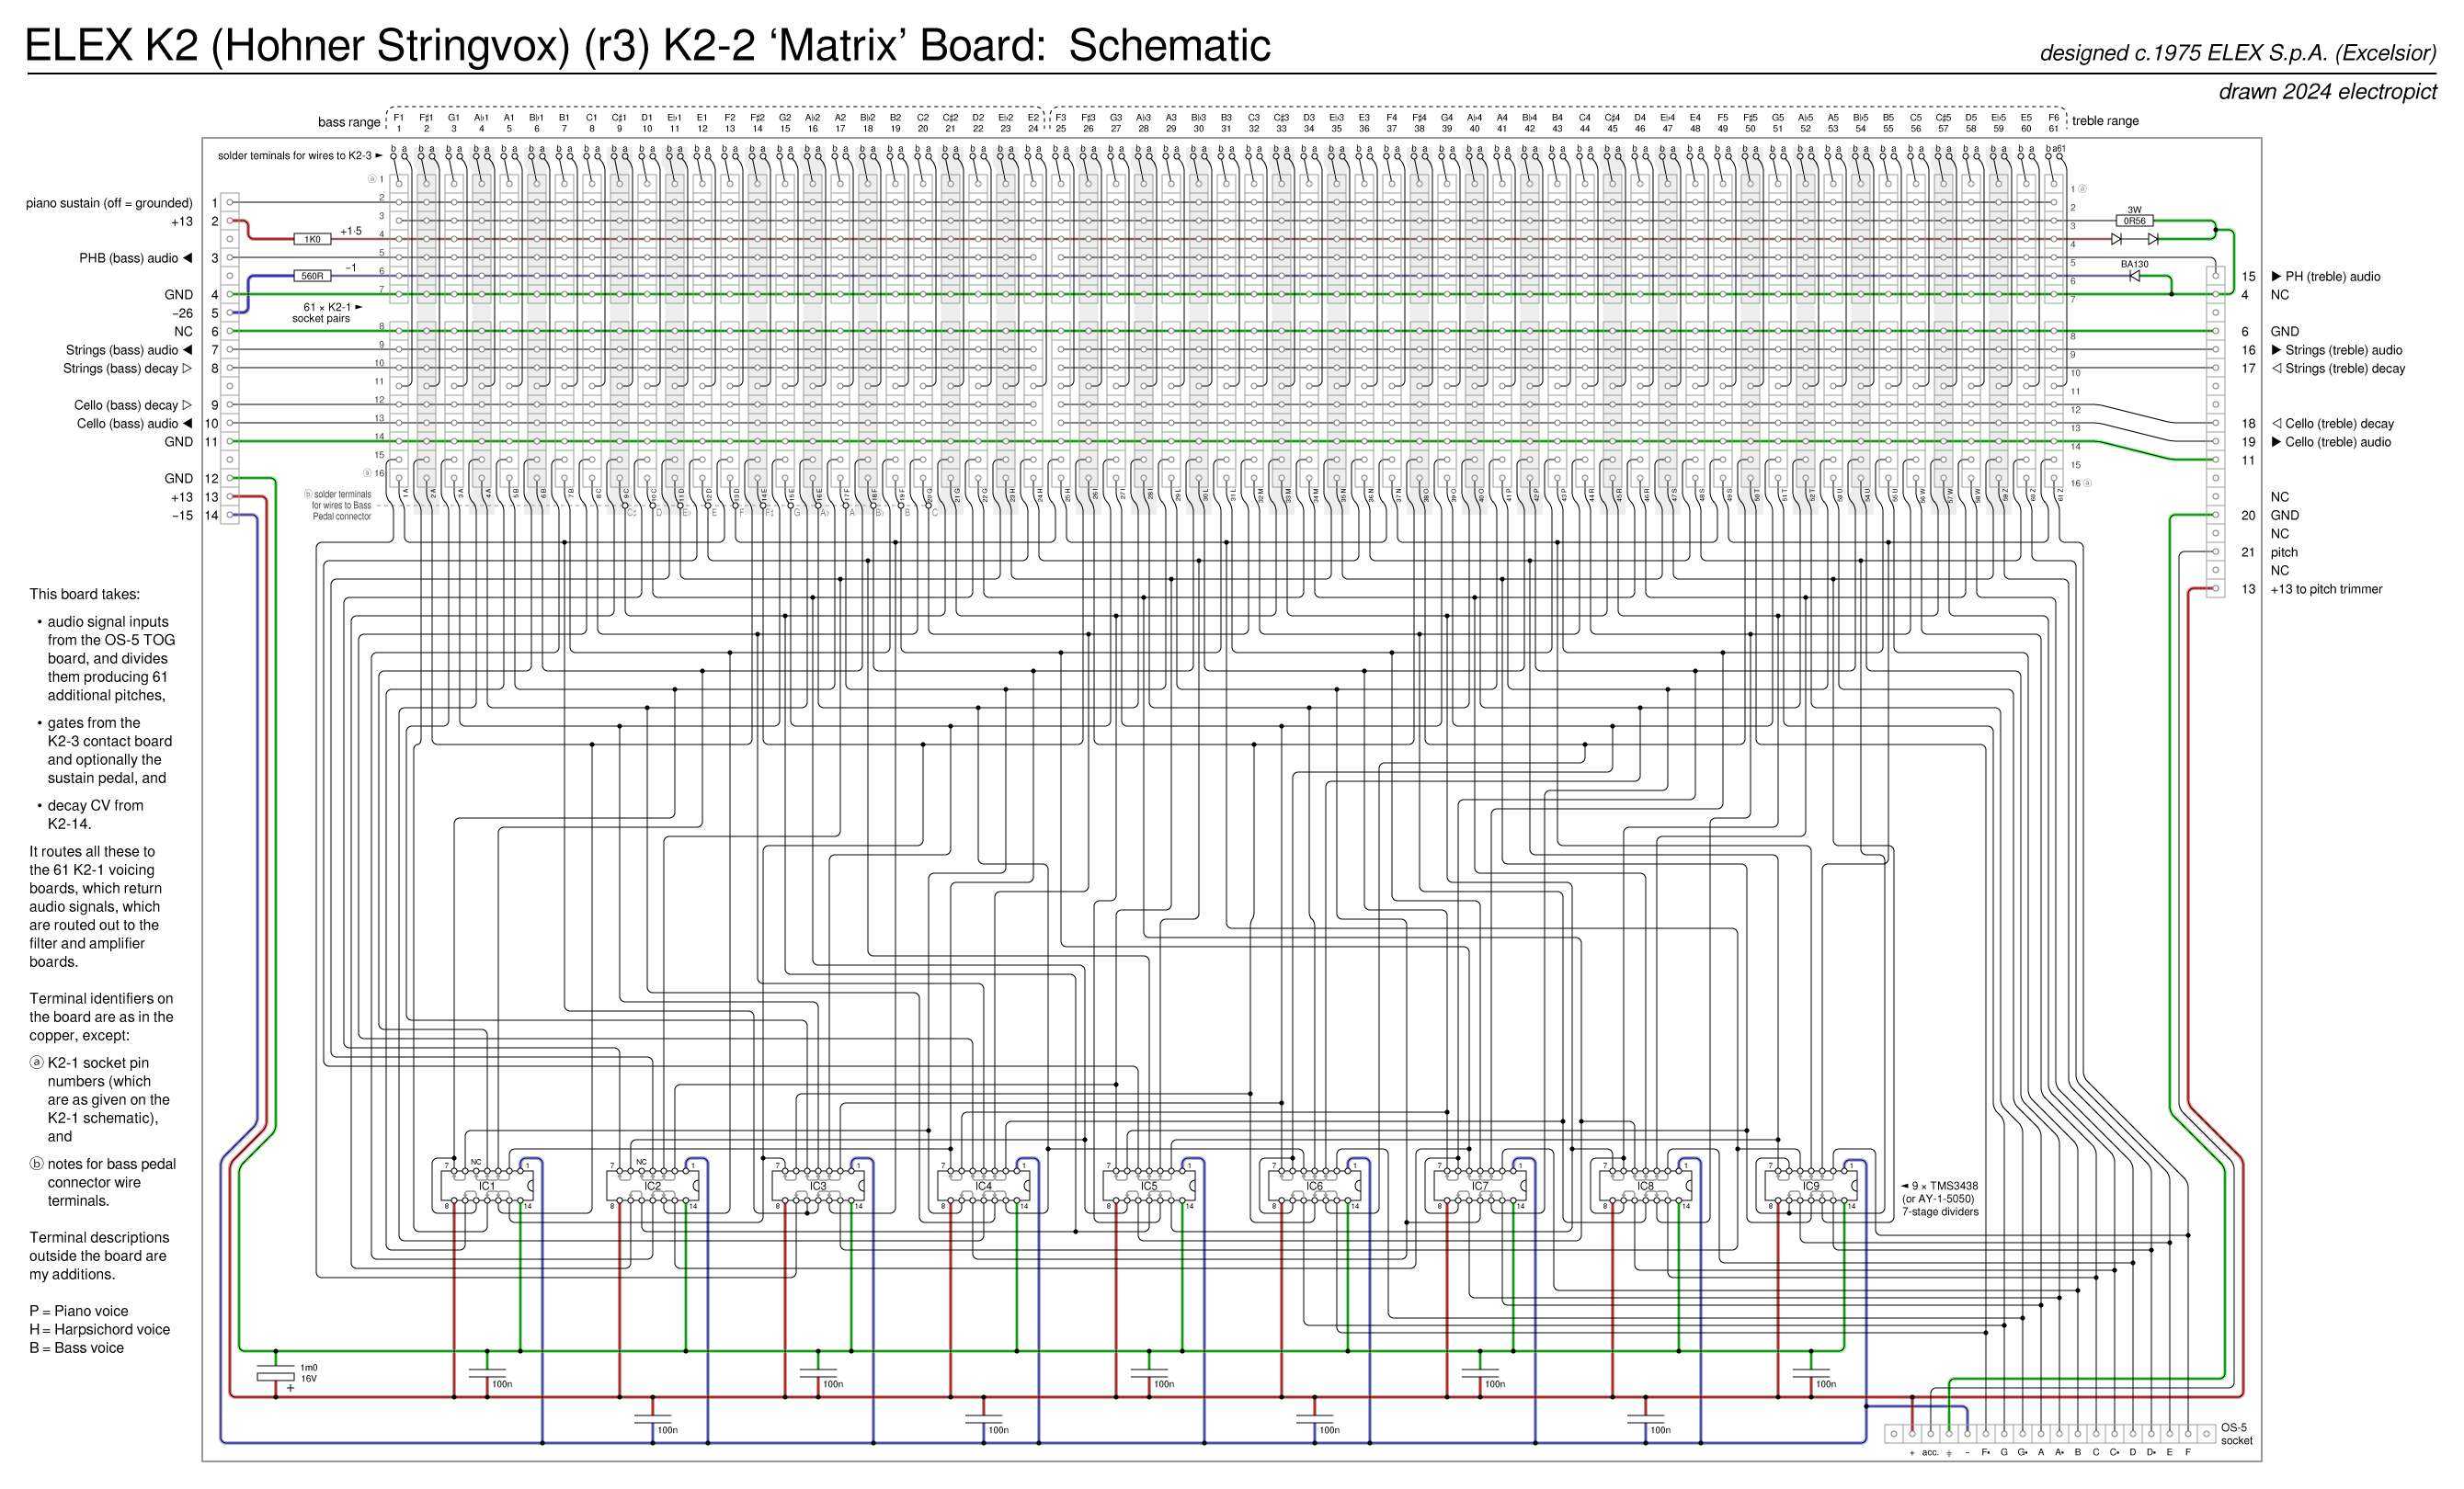 K2r3 K2-2 board schematic